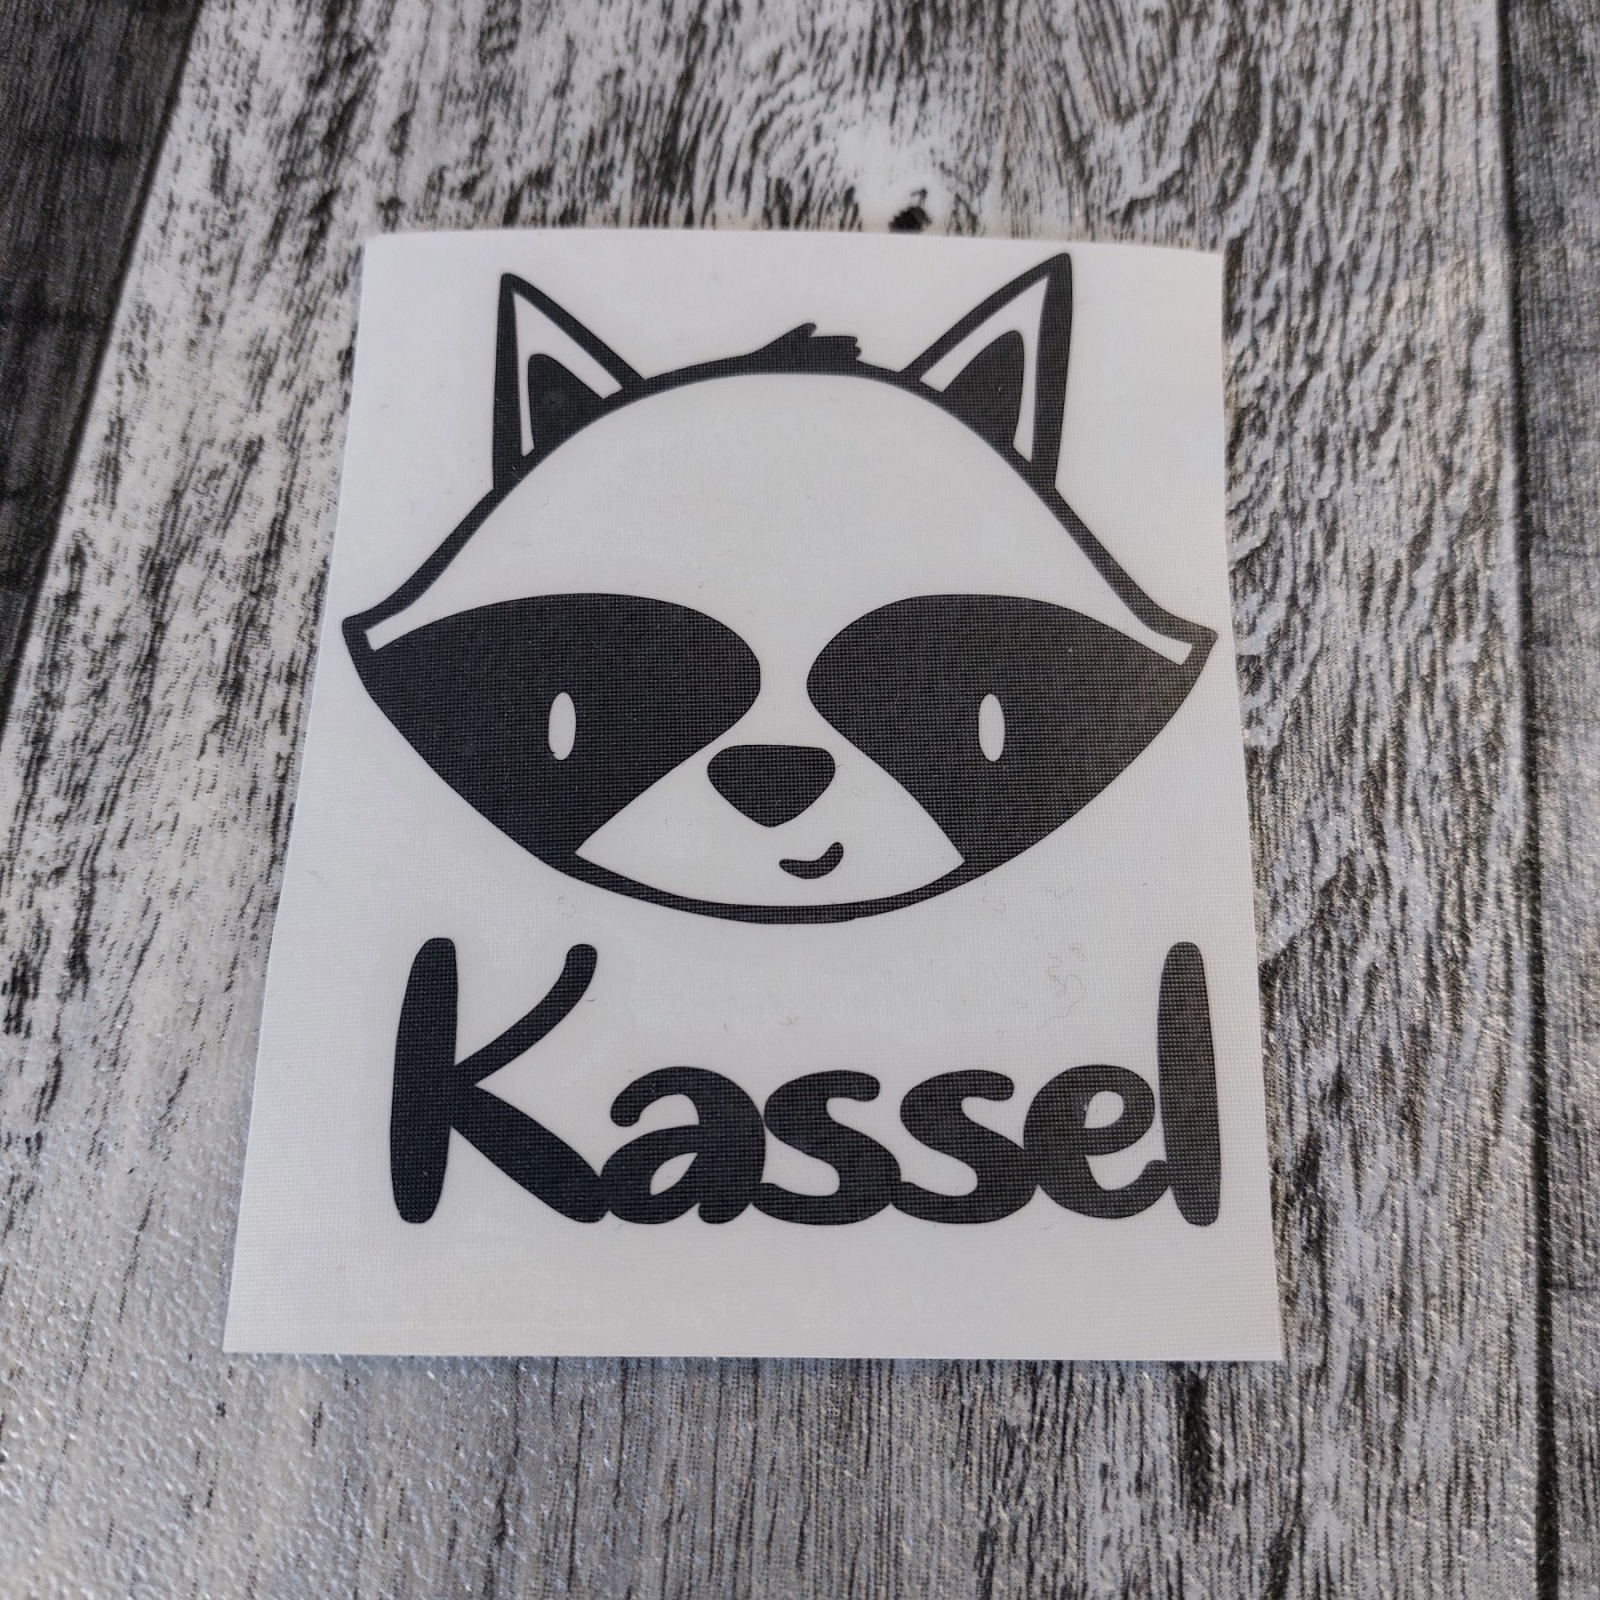 Kassel Waschbär Aufkleber als Autoaufkleber, Wandtattoo, Sticker